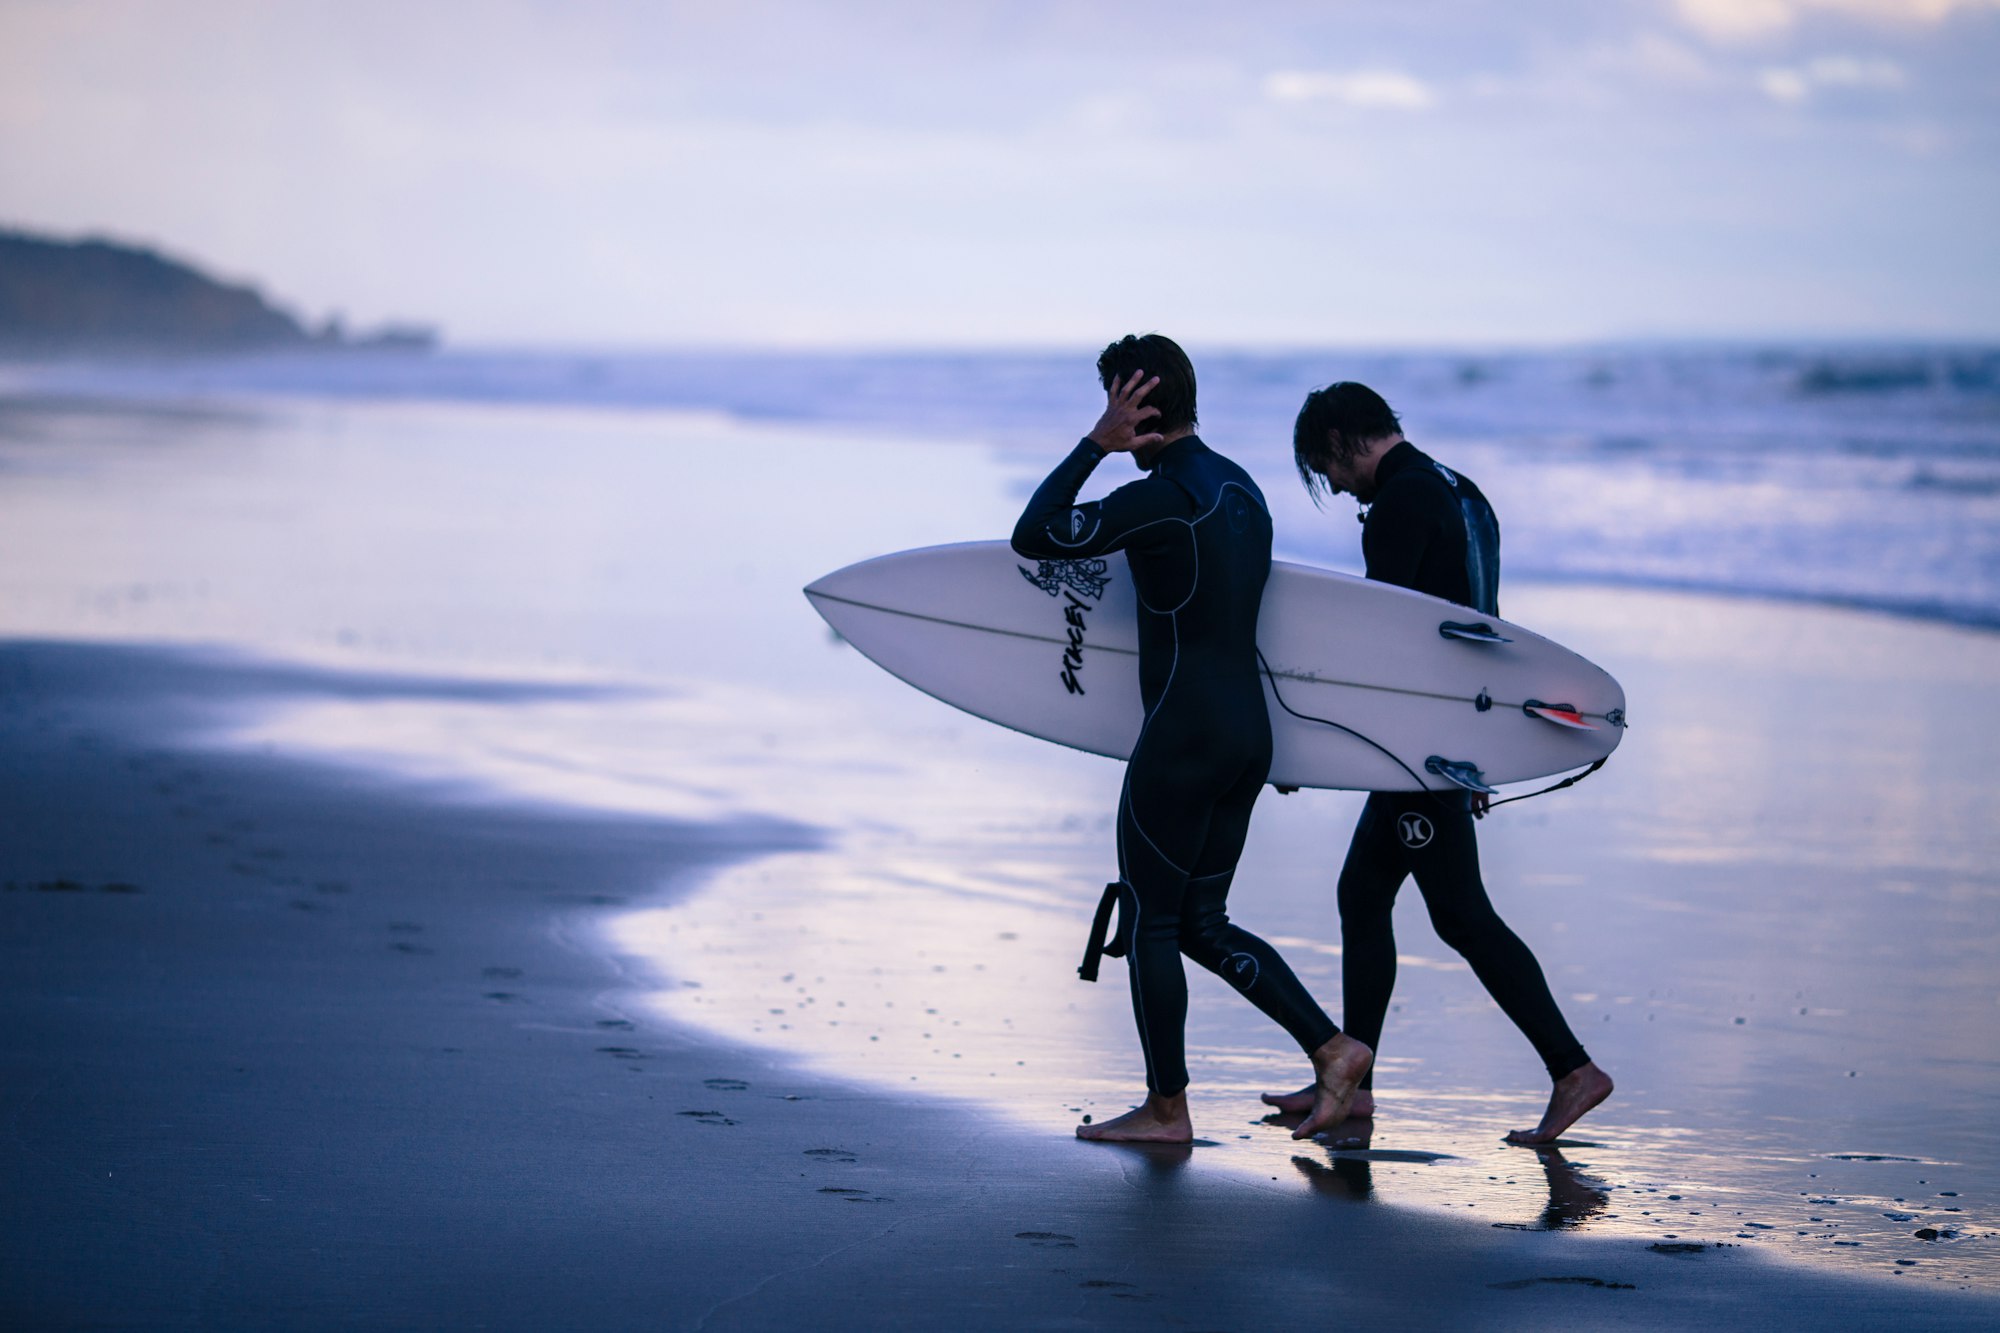 Torquay beach surfers